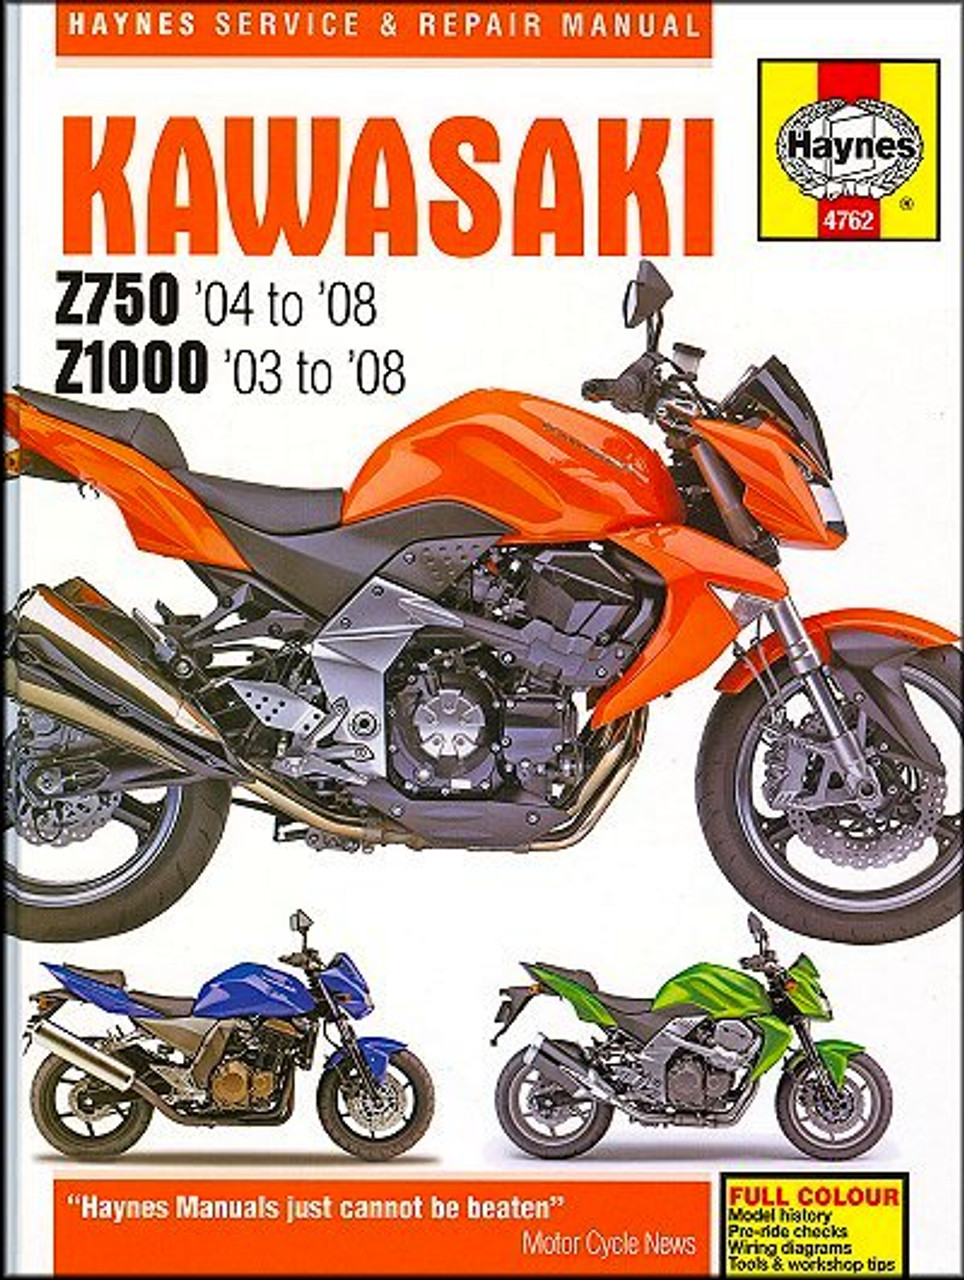 KAWASAKI Z750 (2003-2006) Review